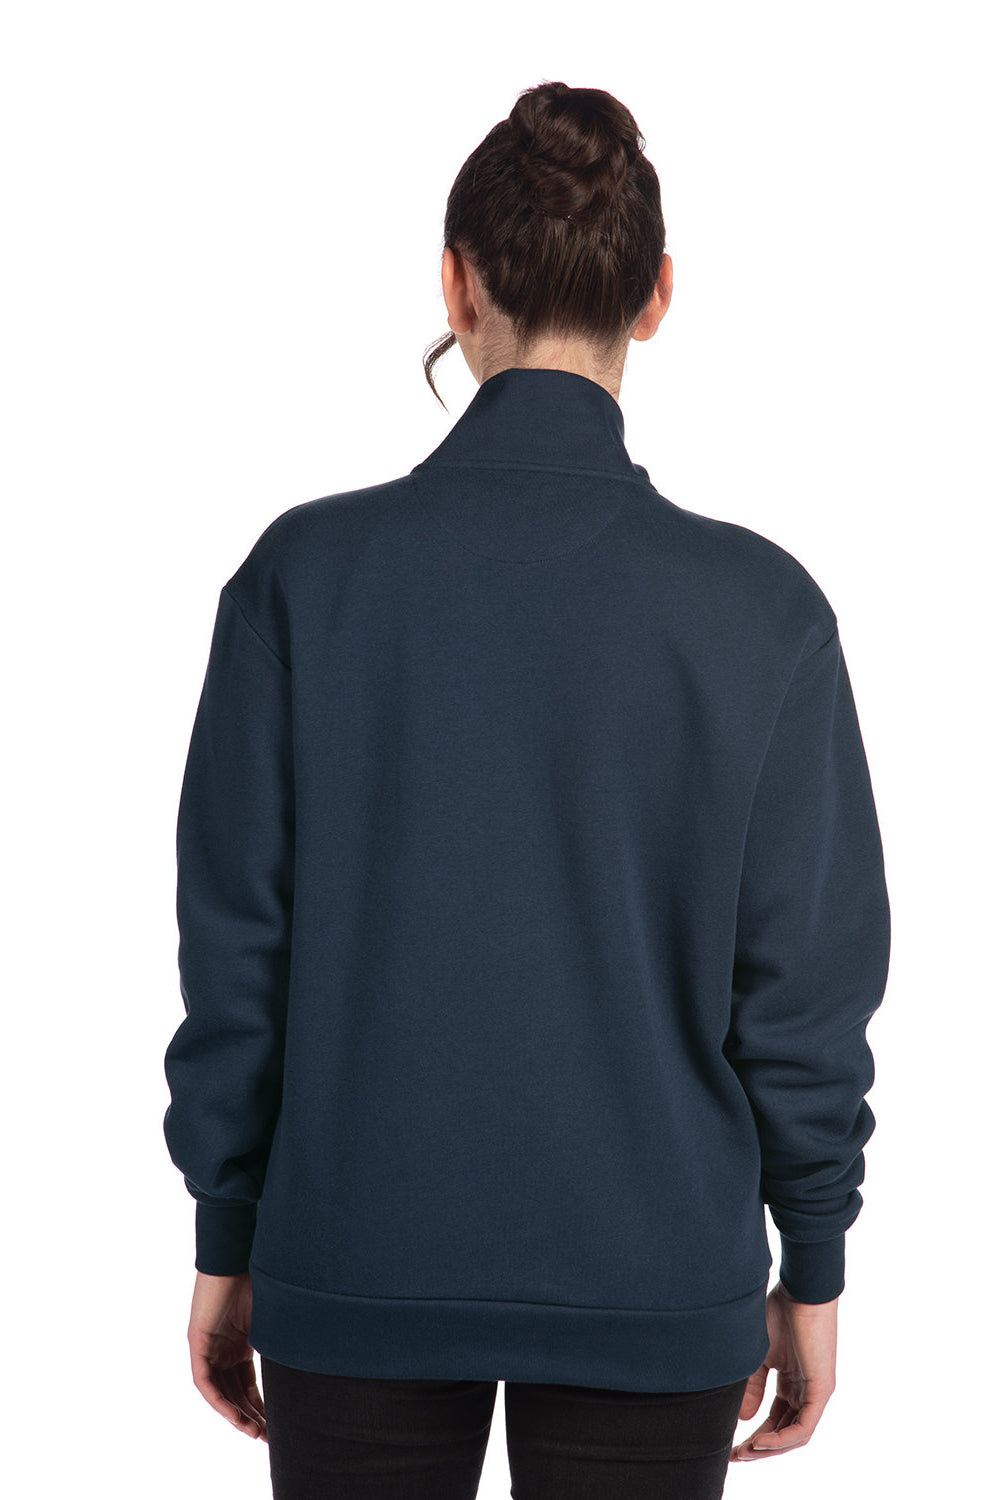 Next Level 9643 Mens Fleece 1/4 Zip Sweatshirt Midnight Navy Blue Back